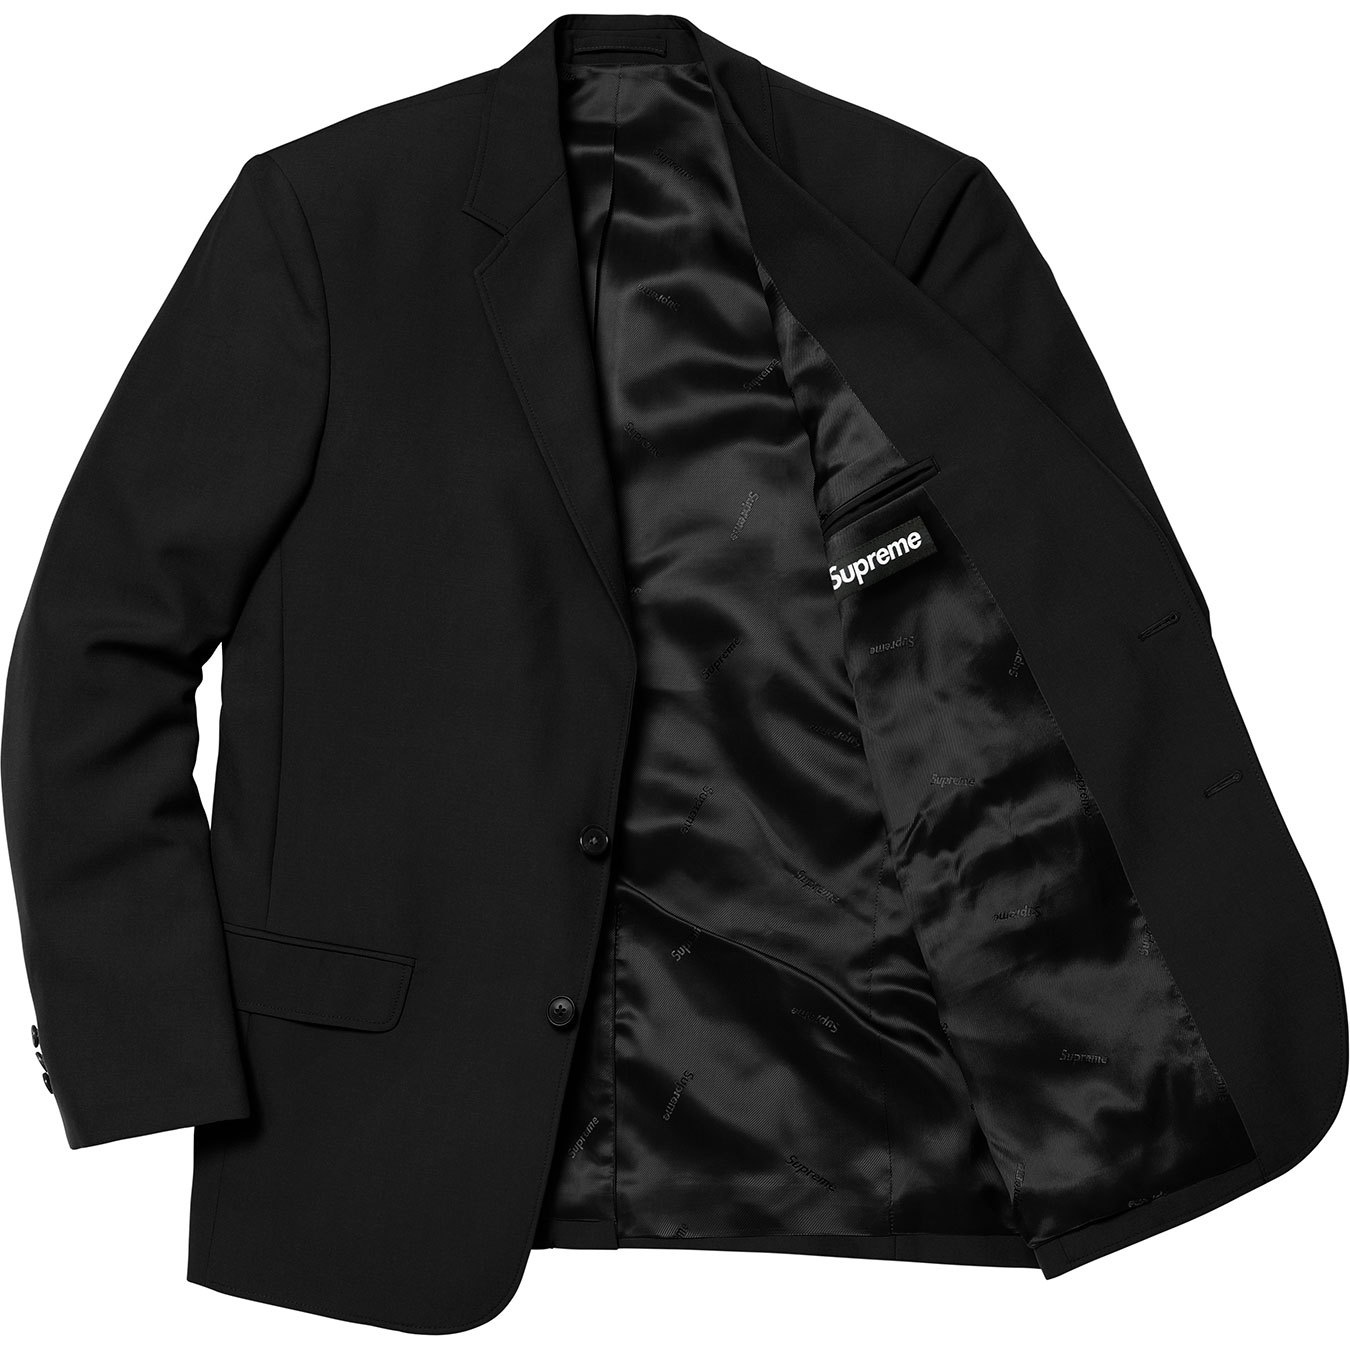 Supreme Suit Suit Black Men's - SS18 - US